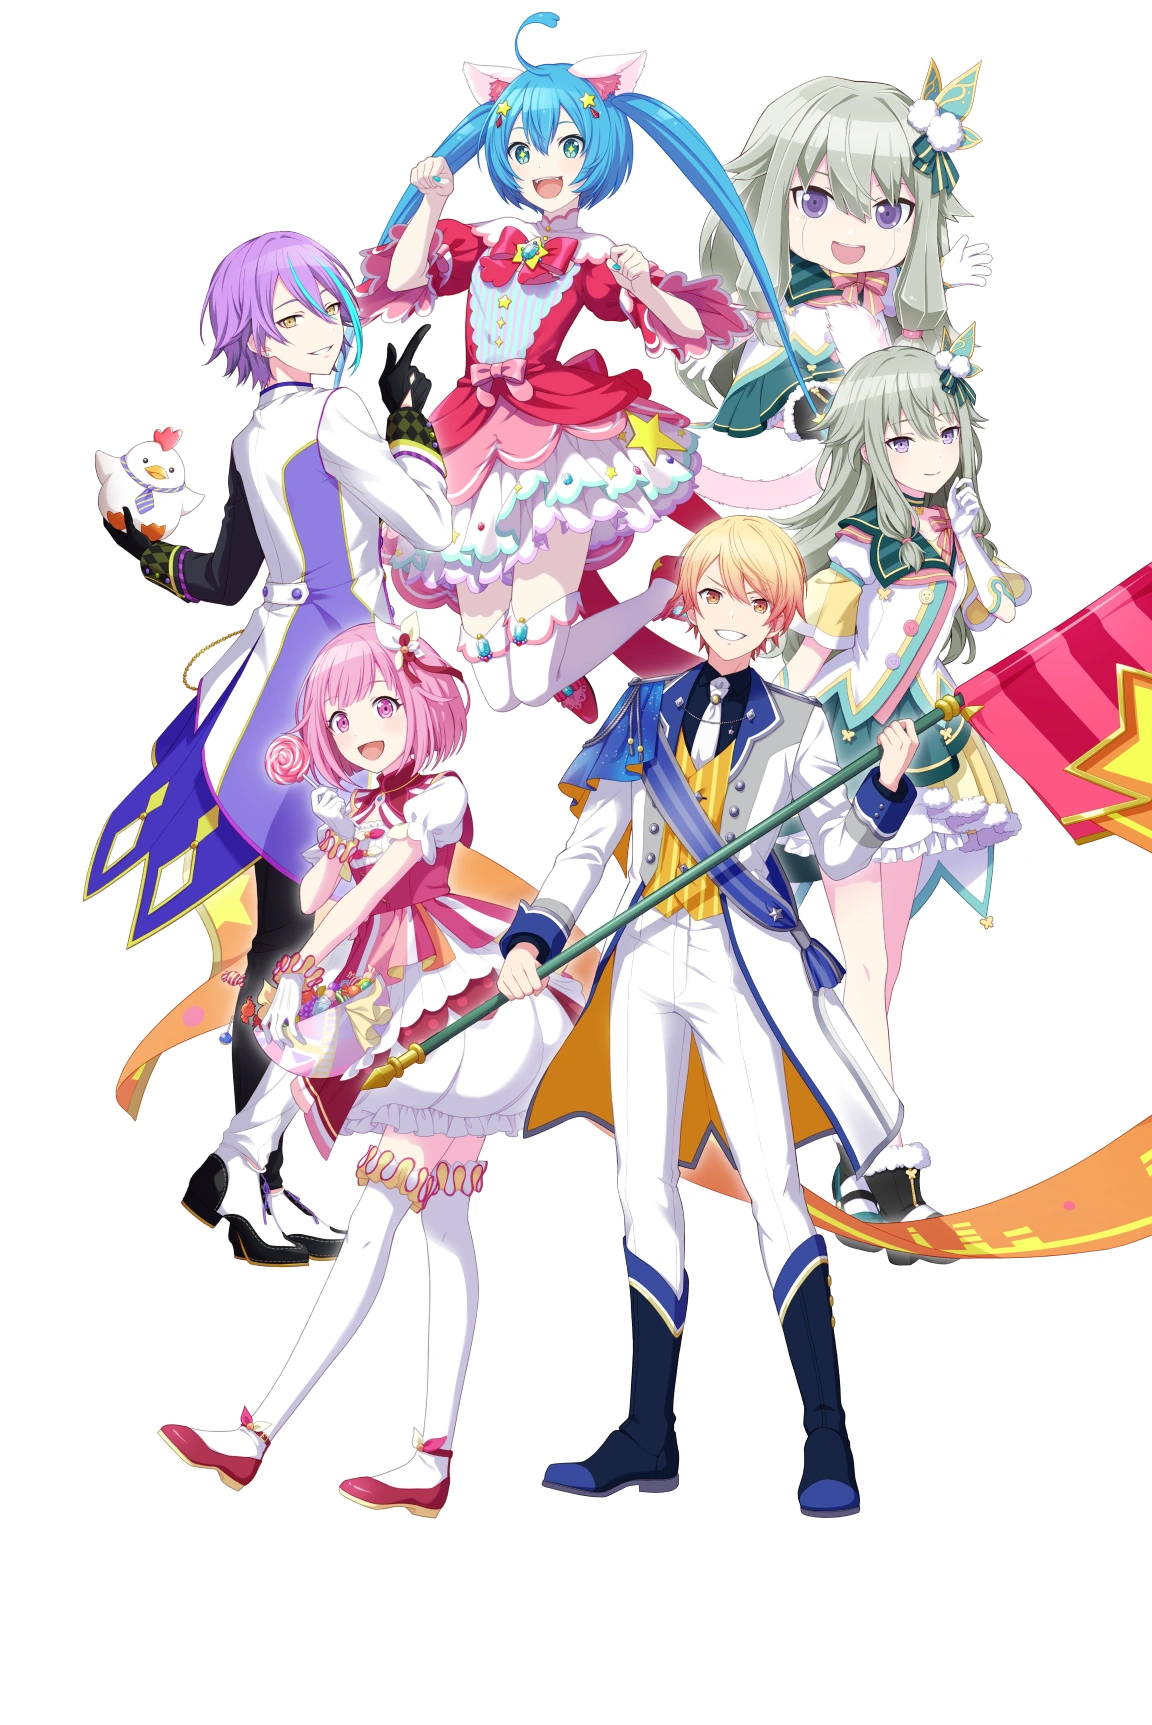 Harukana Receive: Novo PV, informações sobre canções tema e data de estréia  do anime » Anime Xis